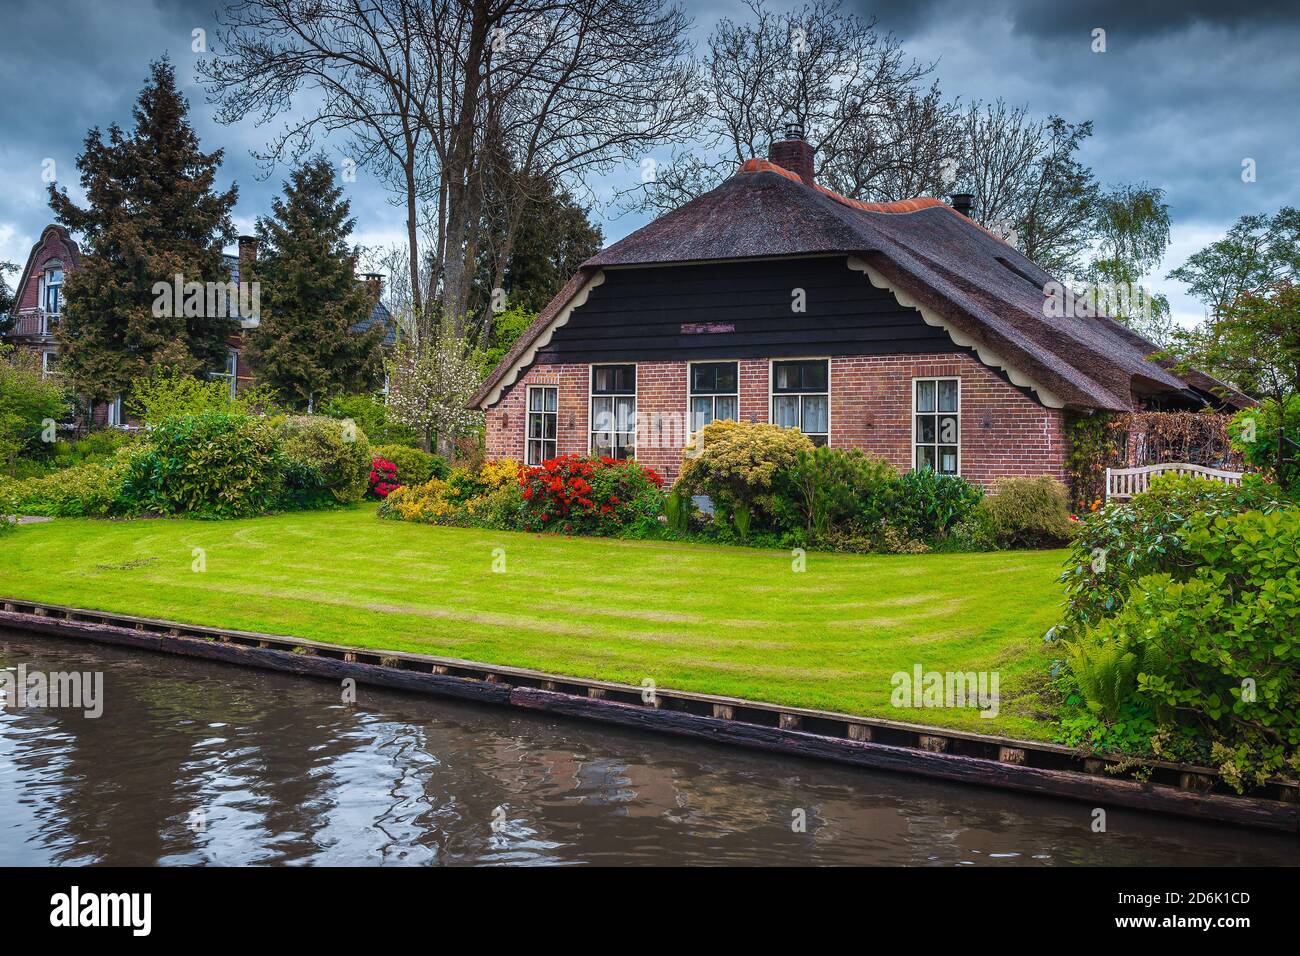 Belle maison en bord de mer et jardin ornemental avec des fleurs colorées, Giethoorn, pays-Bas, Europe Banque D'Images